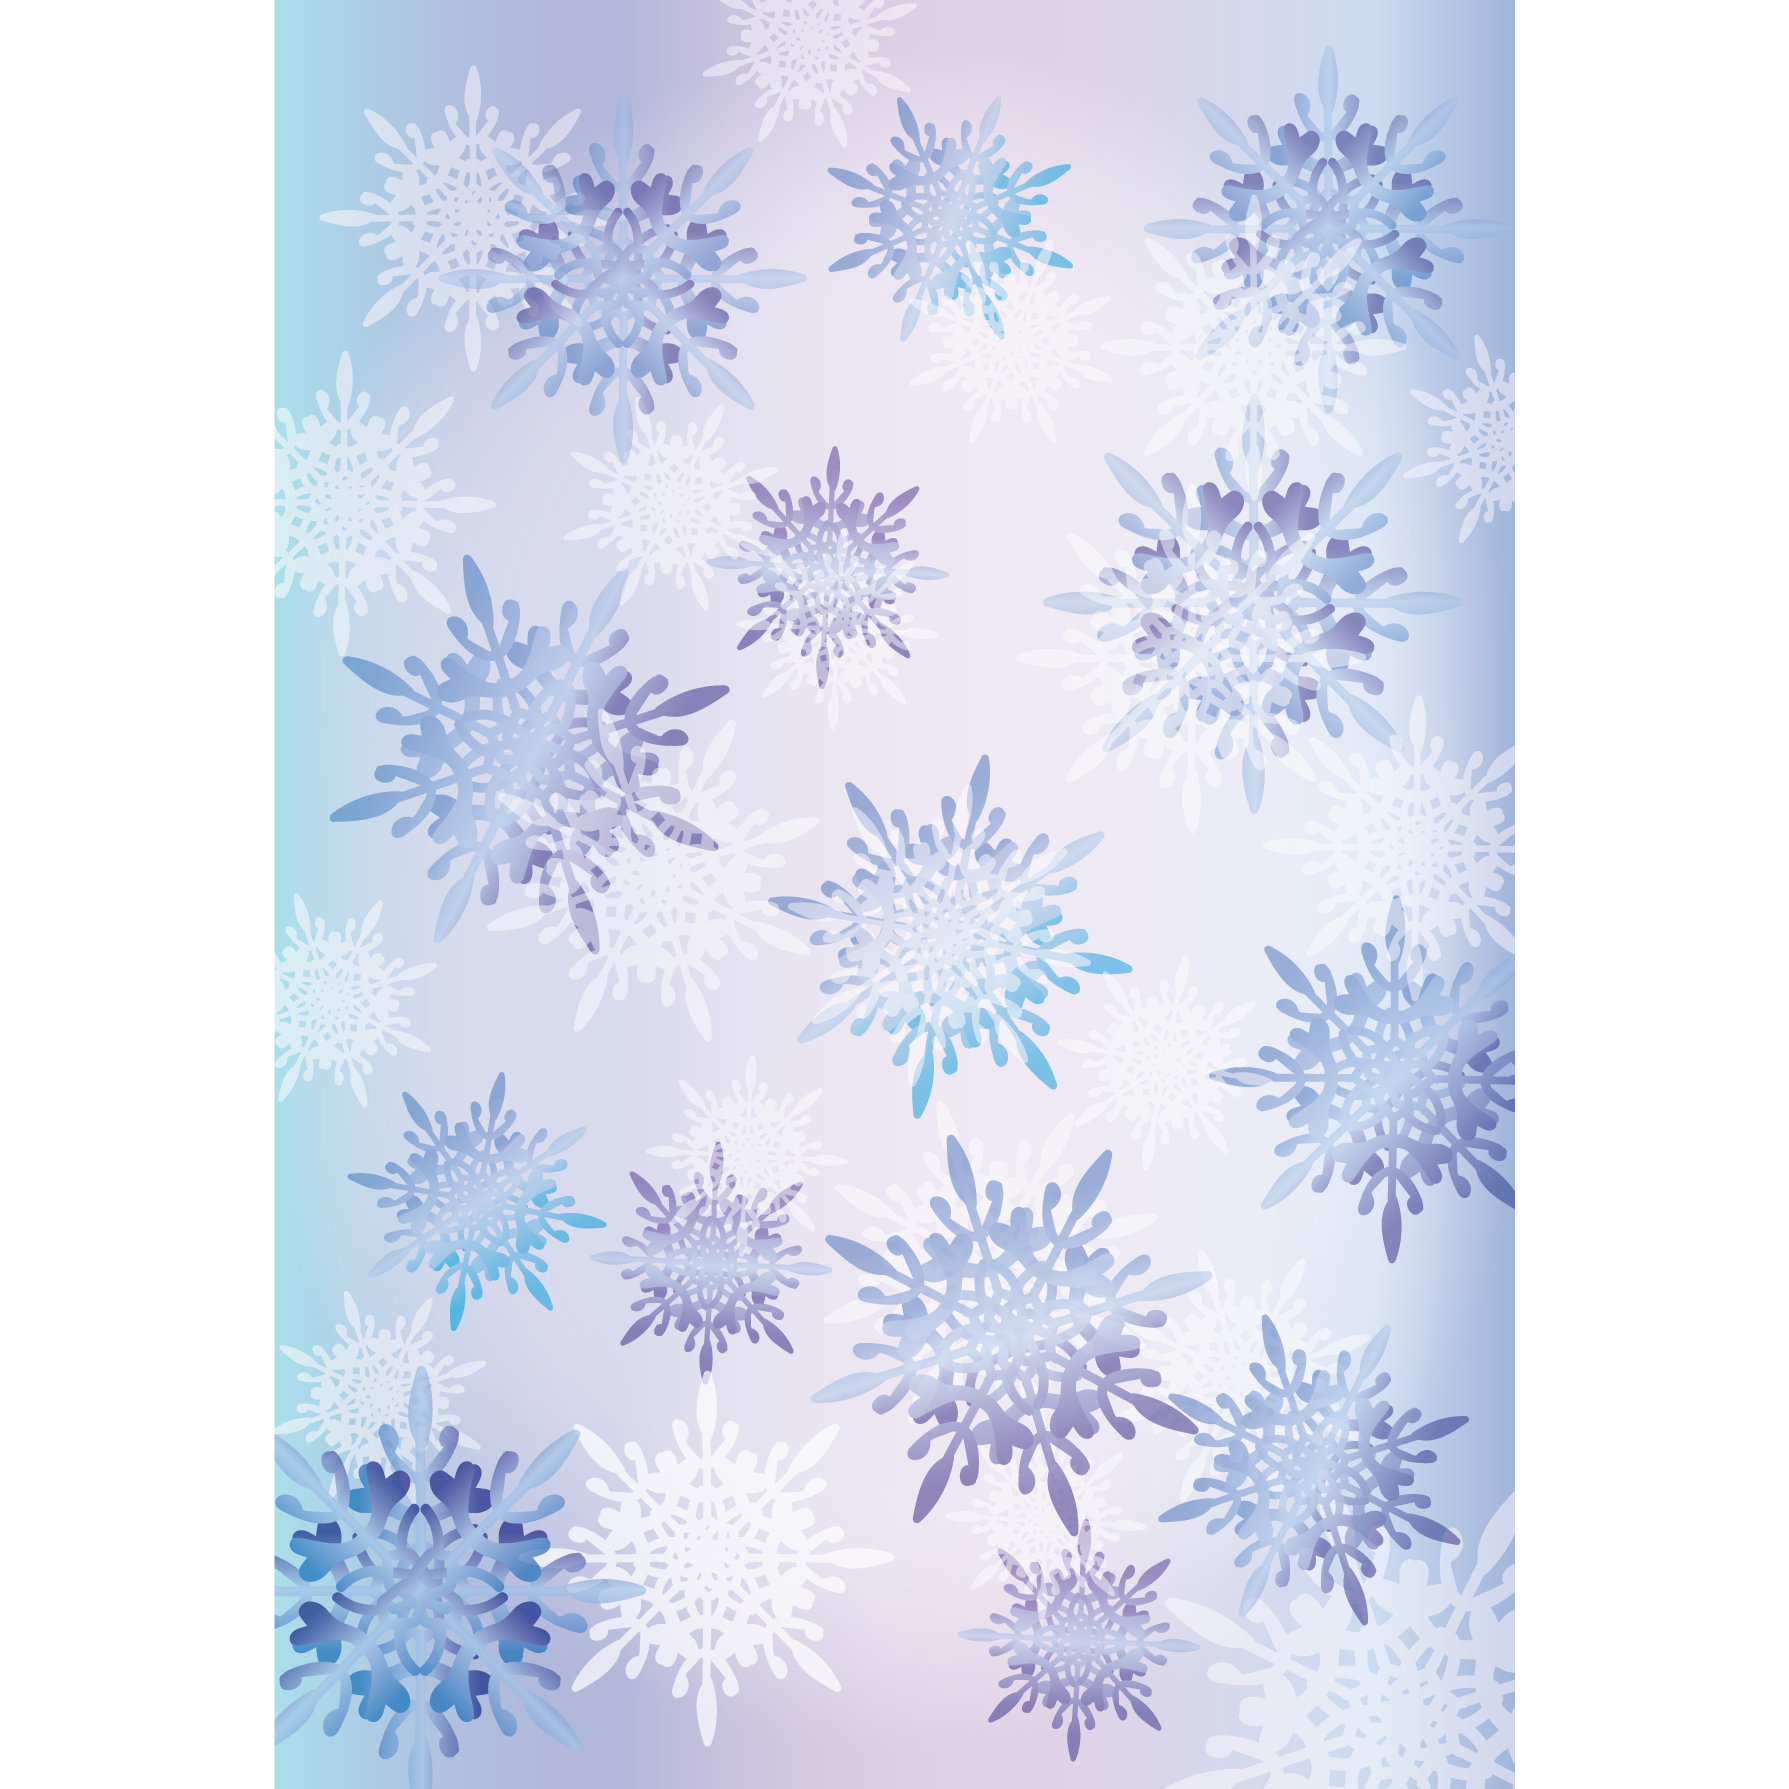 大人かわいい 雪の結晶の背景 デザイン素材 A4 フリーイラスト